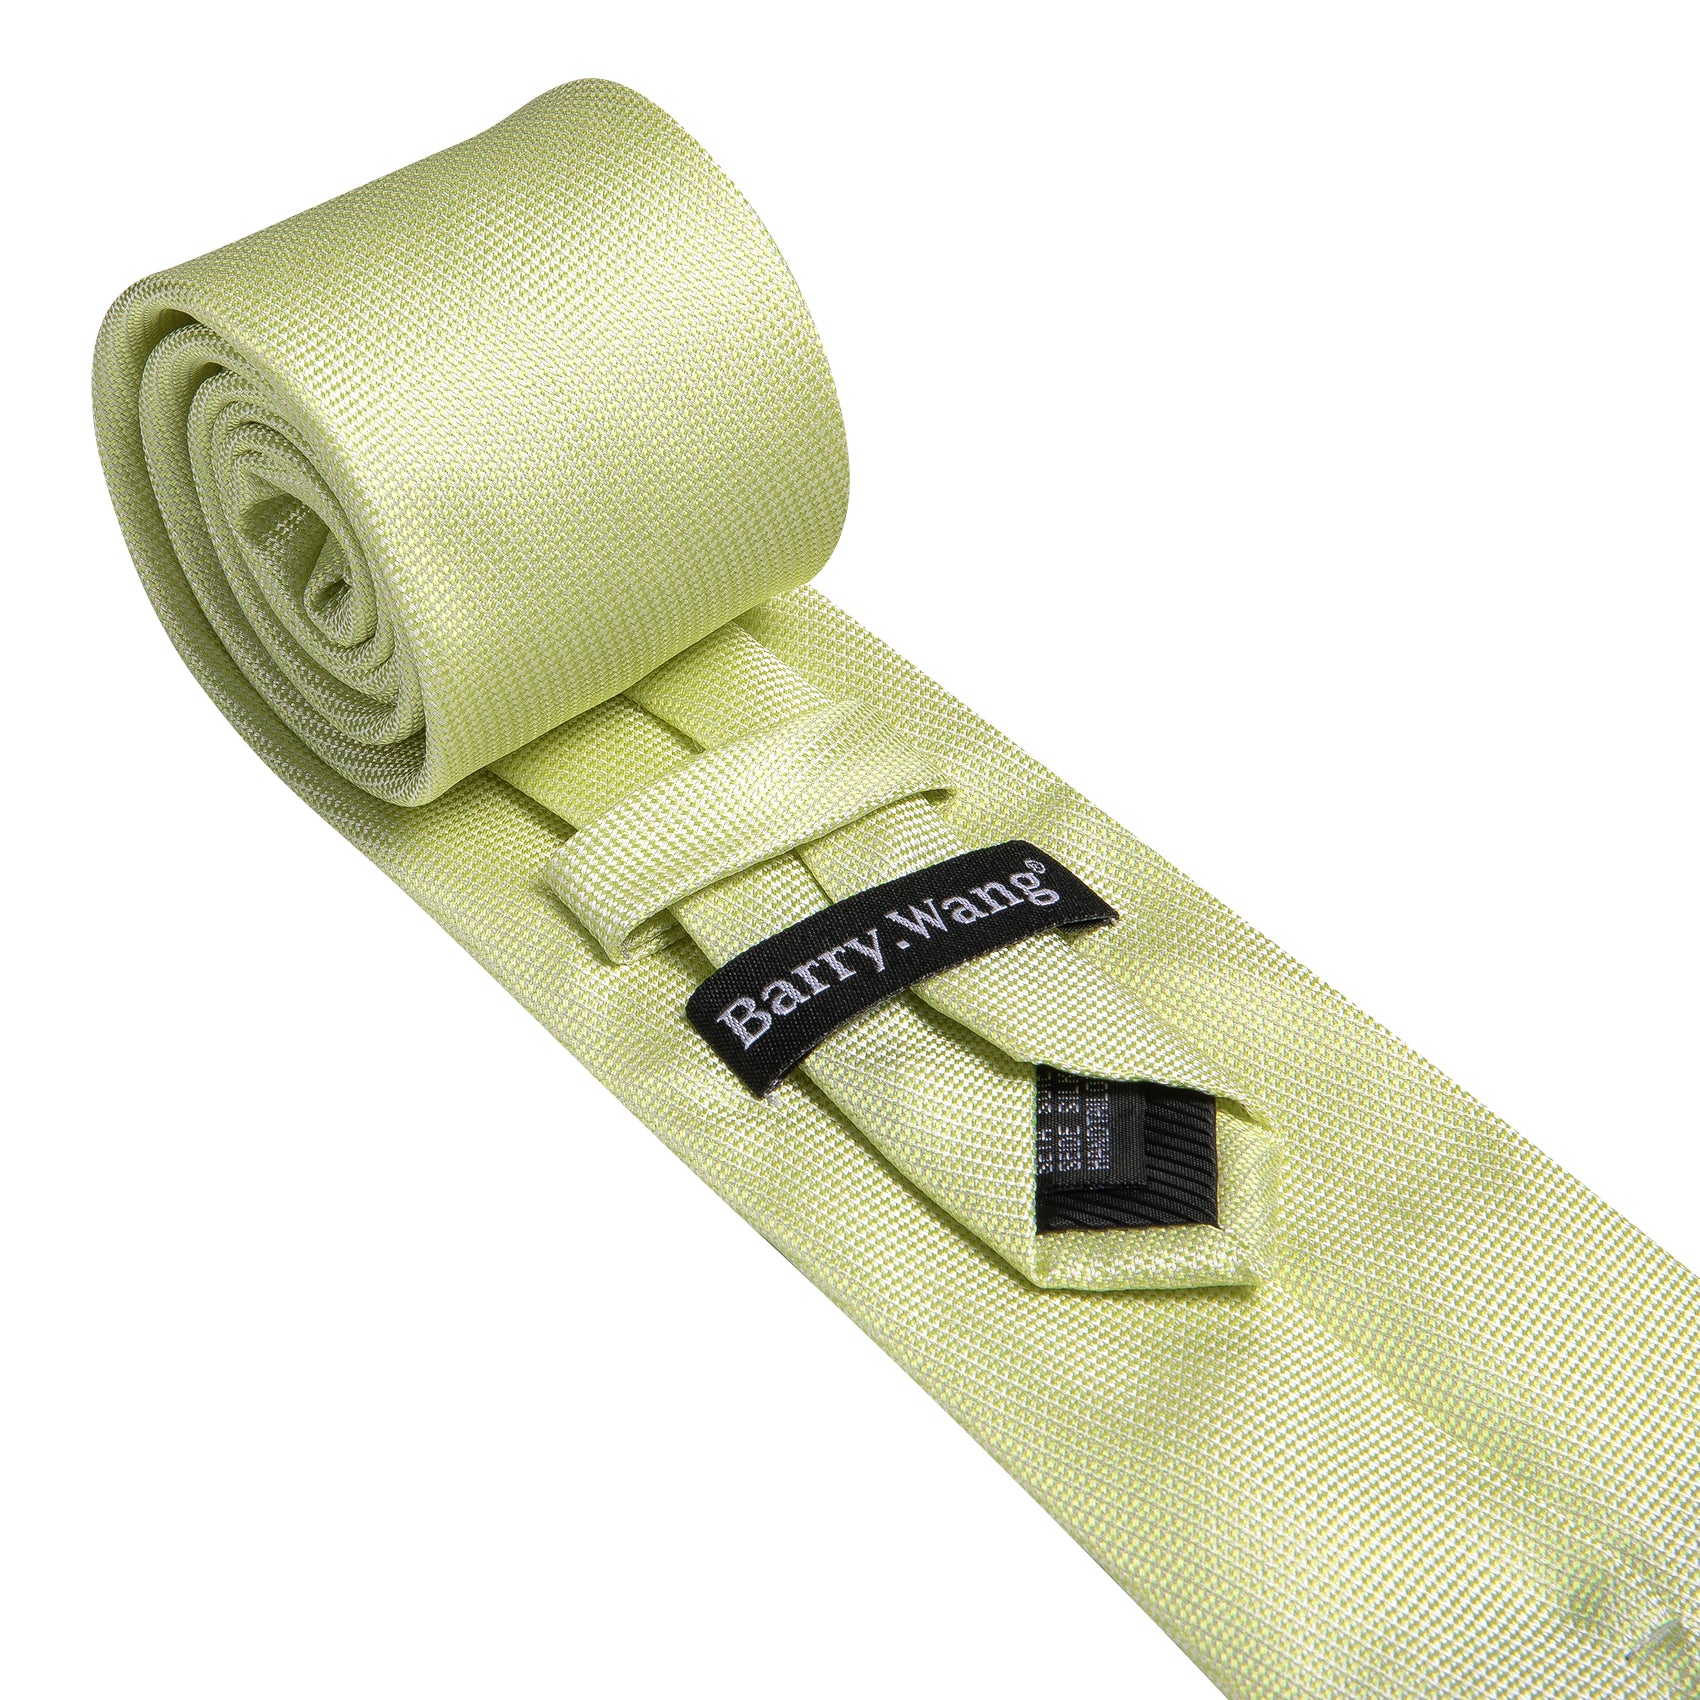  Mist Green Solid Silk Tie Handkerchief Cufflinks Set